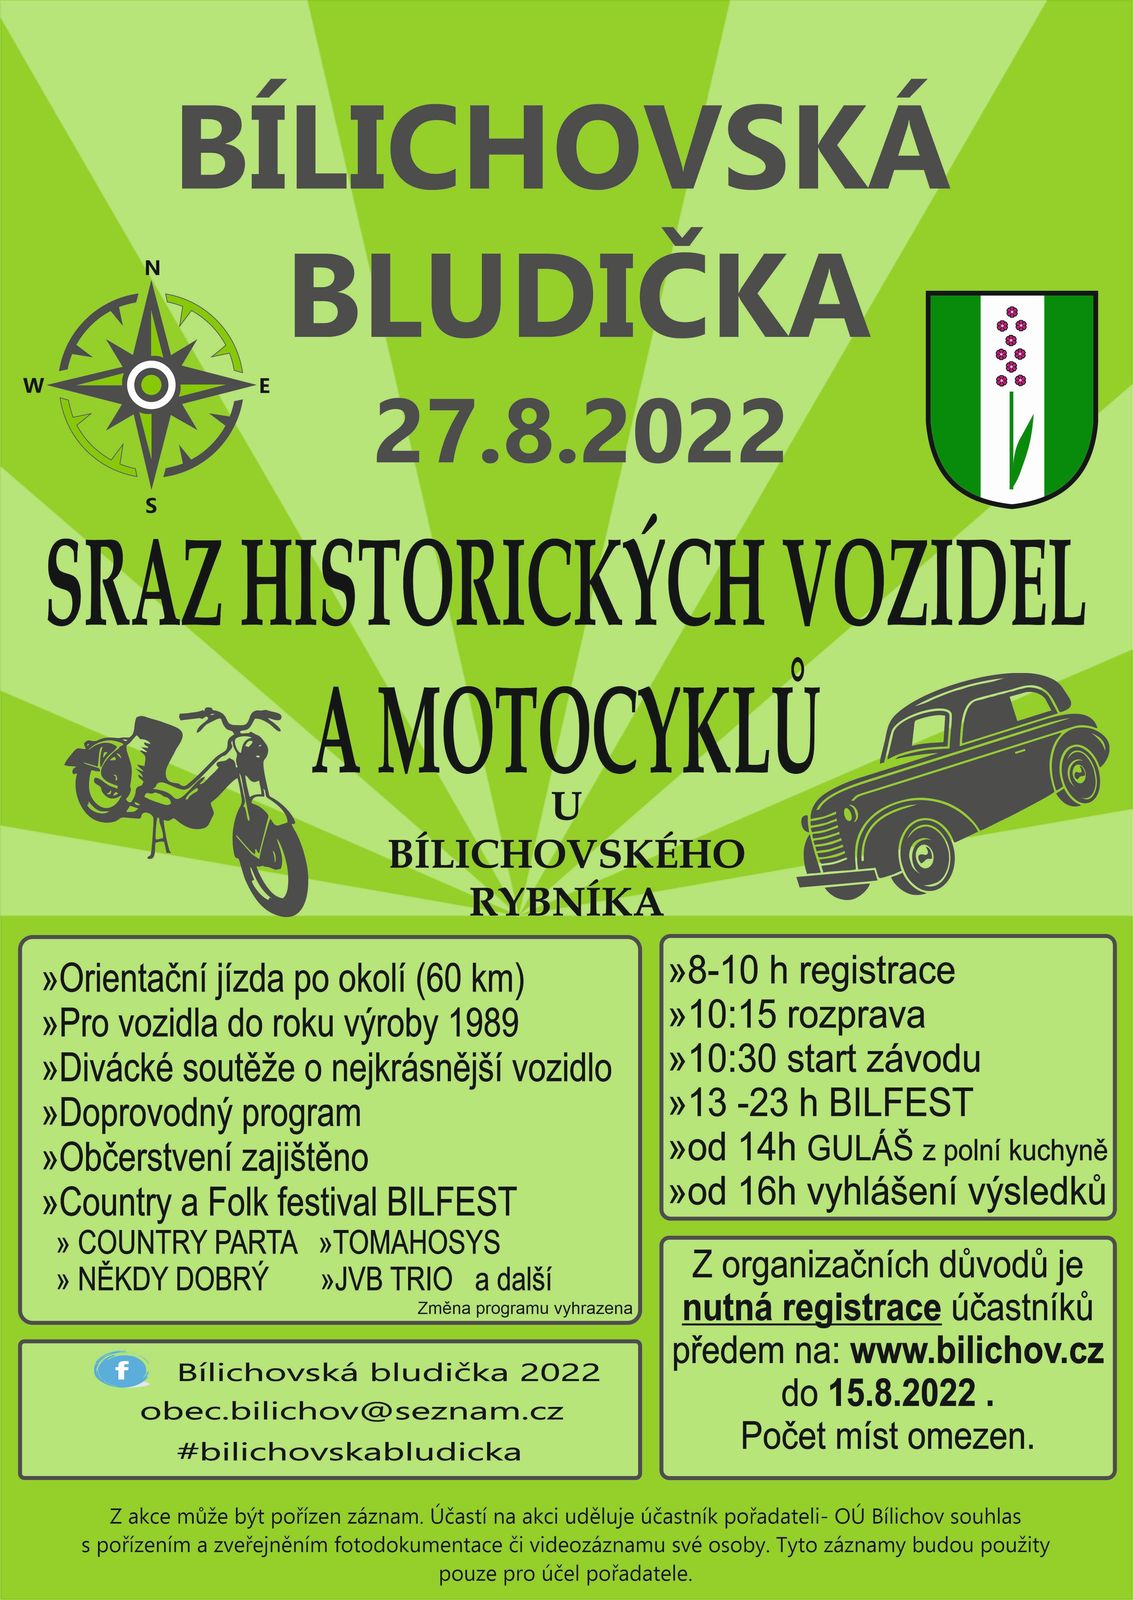 PLAKAT BILICHOVSKA BLUDICKA 2022.jpg